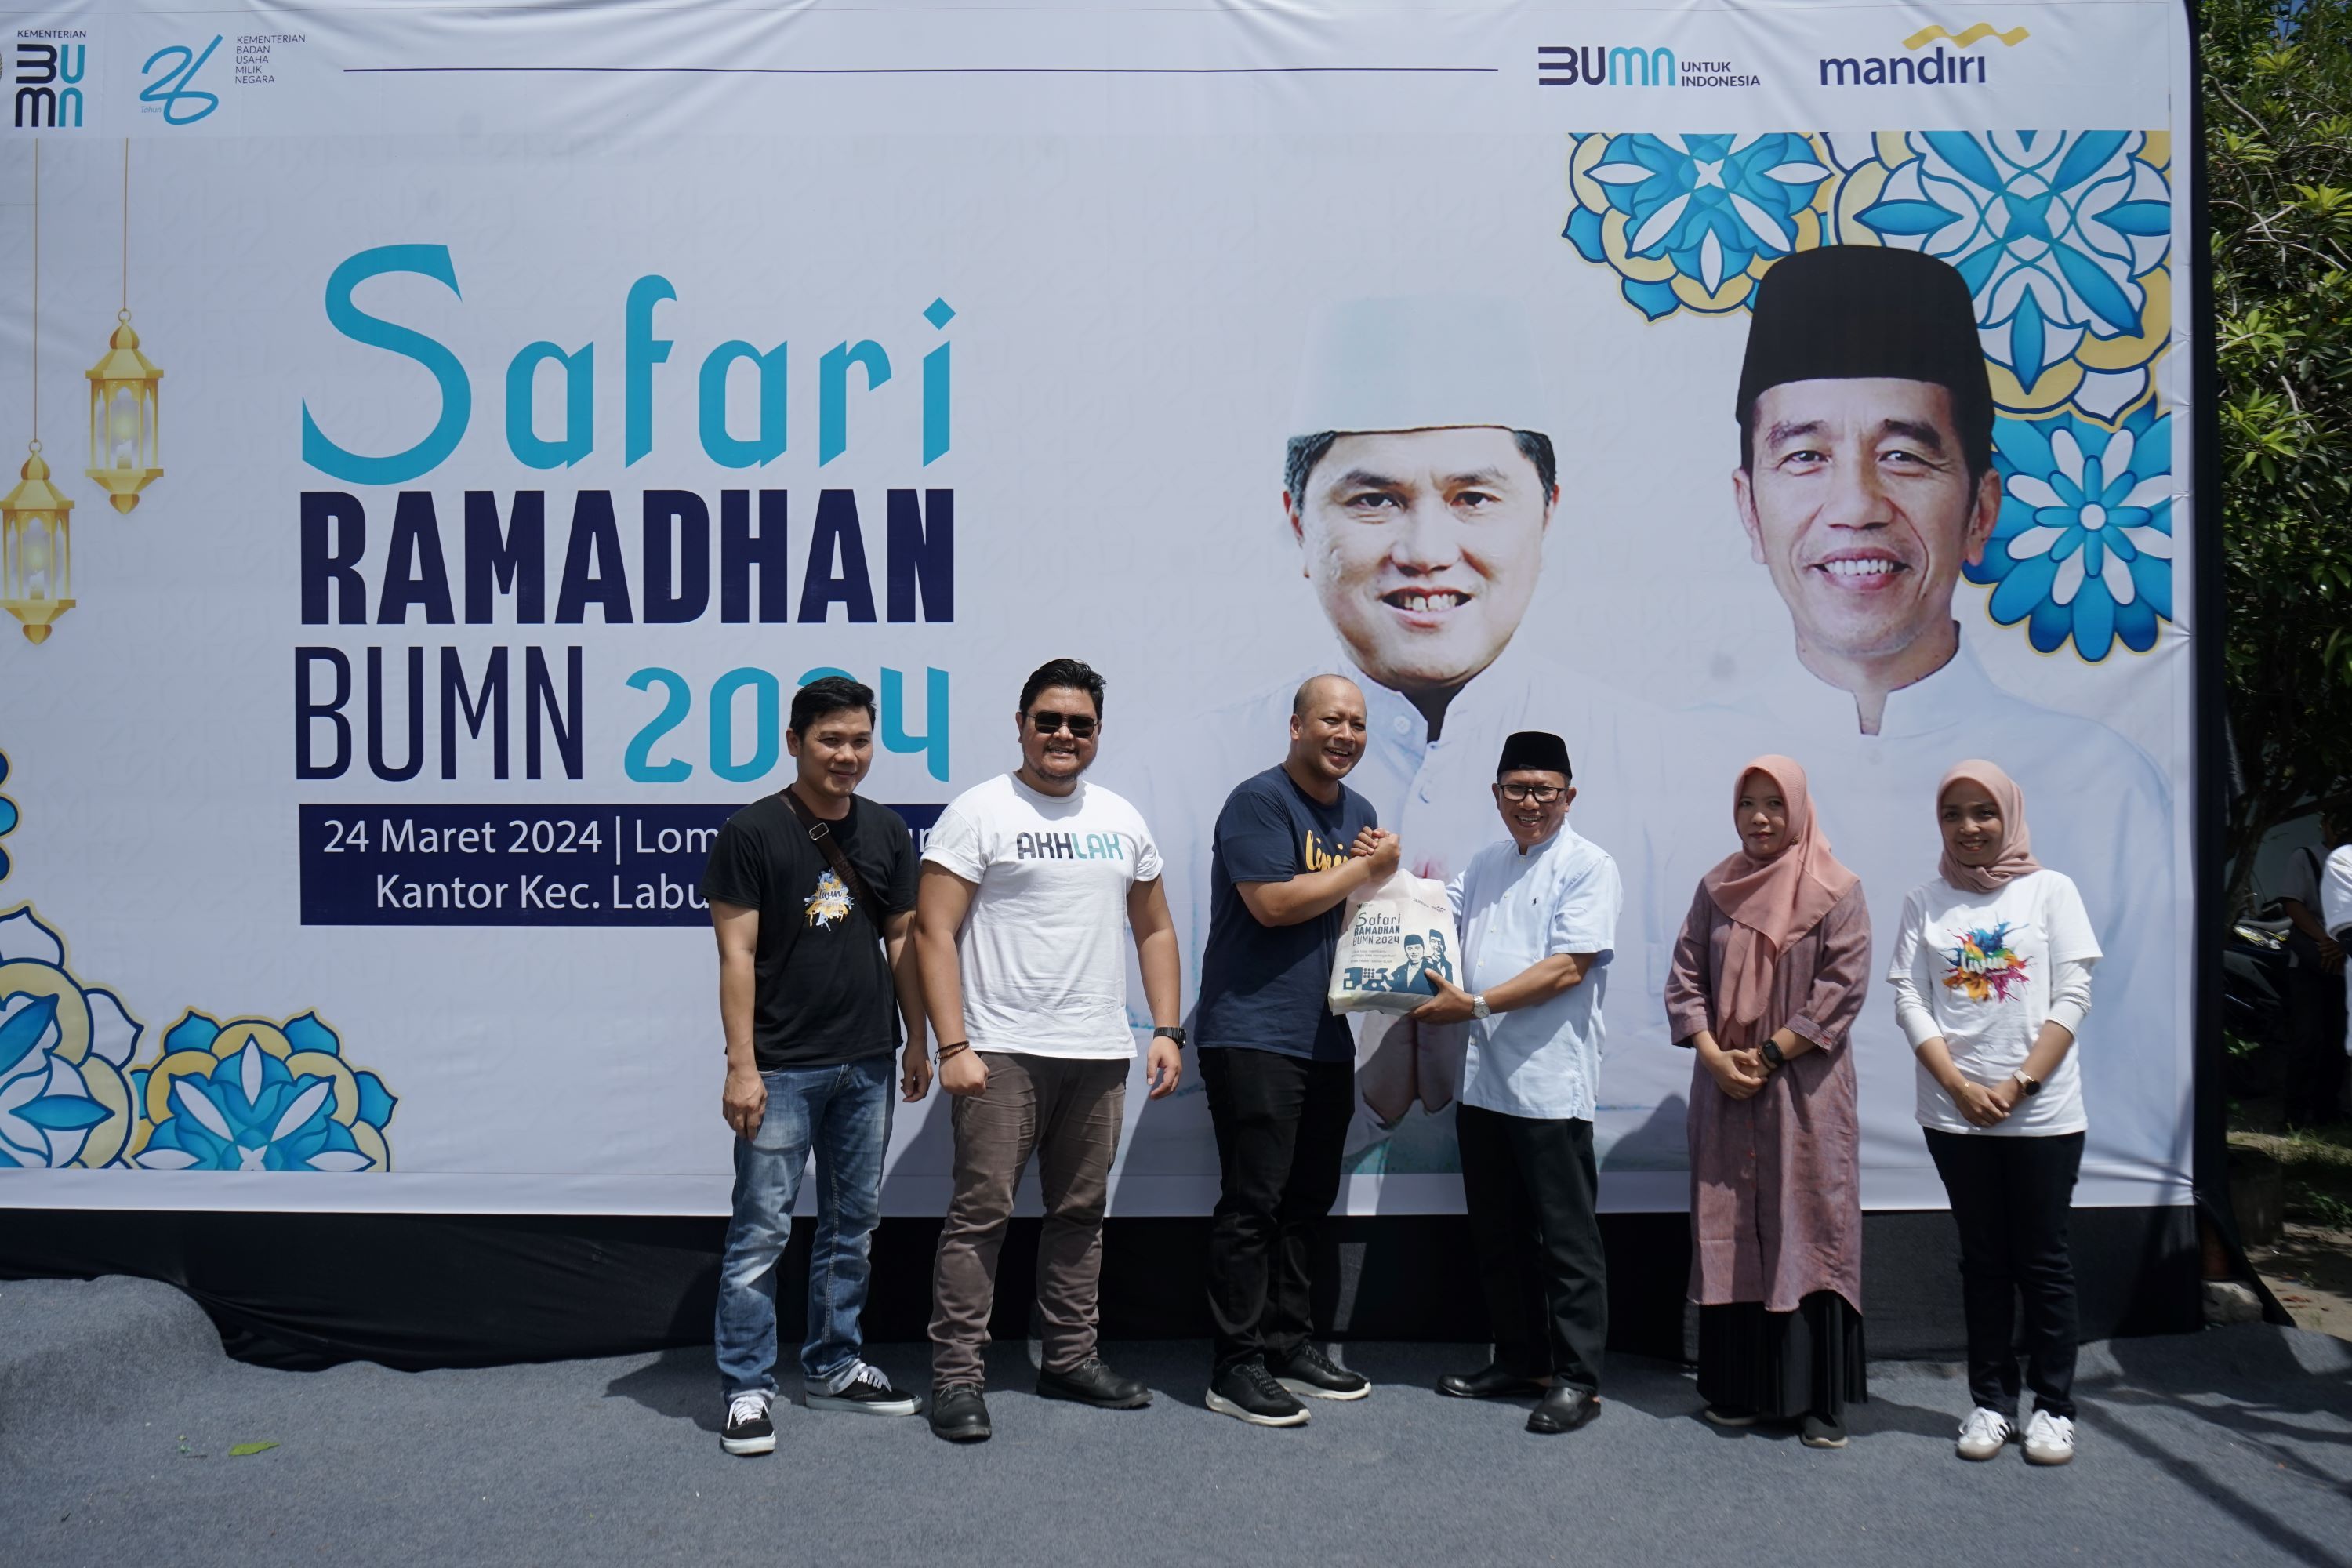 Membawa semangat membangun BUMN untuk Indonesia dalam kebersamaan di momentum Ramadan 1445 Hijriah, Kementerian BUMN kembali menggelar kegiatan Safari Ramadhan BUMN 2024. 